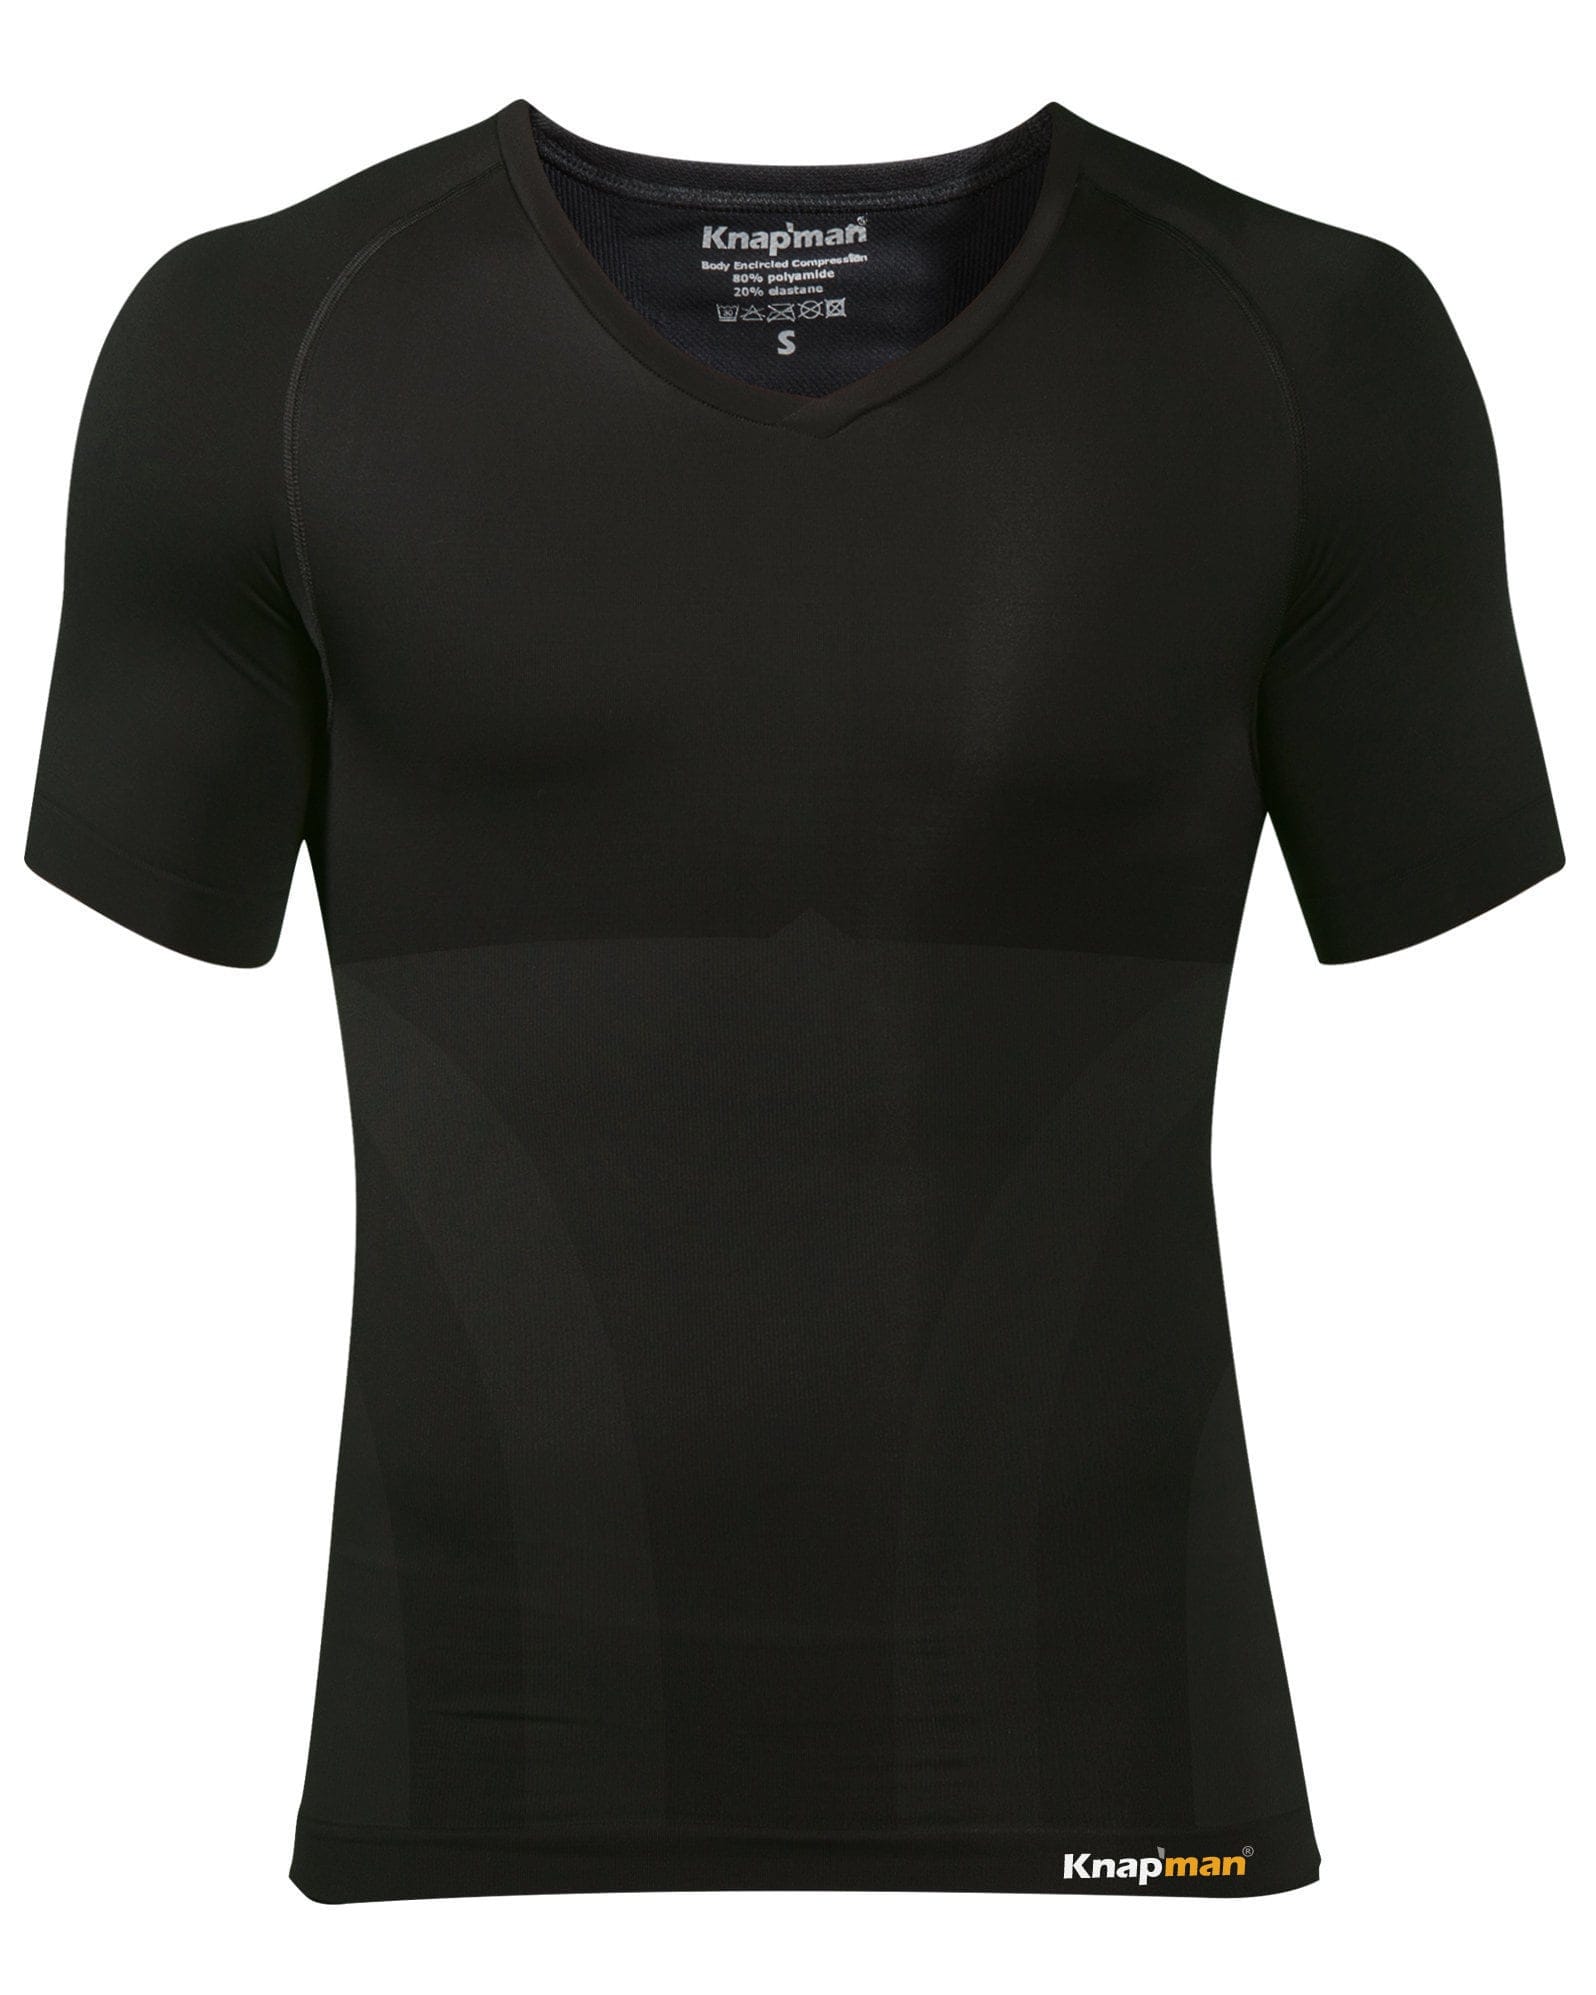 https://www.knapman.shop/product/72-large-knapman-compression-shirt-v-neck-black.jpg